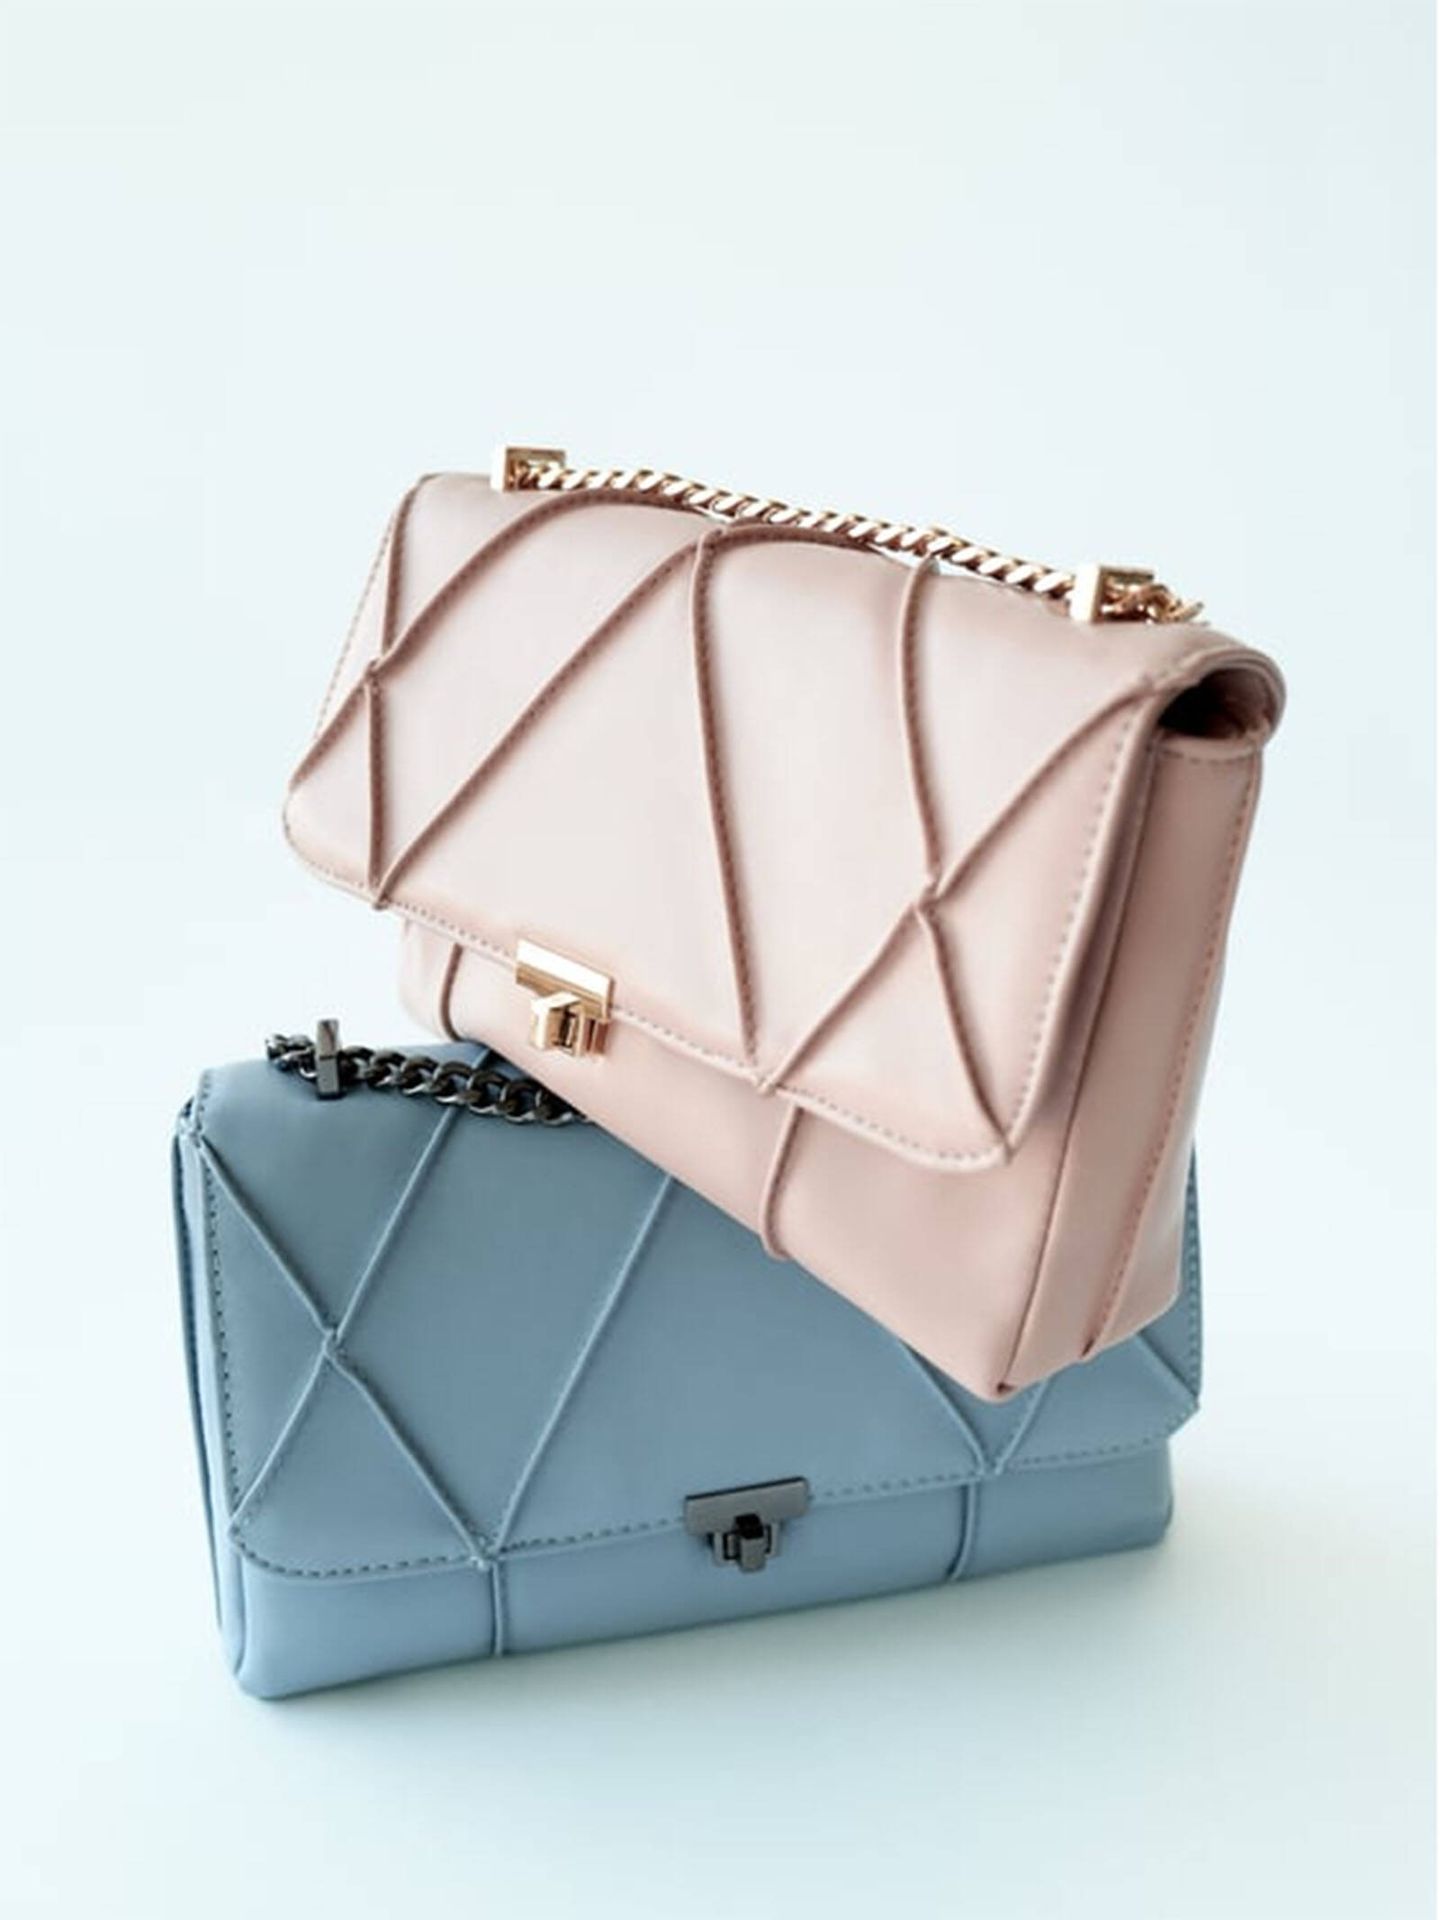 En cuatro colores y rebajado: el bolso bandolera que será un nuevo éxito viral. (Zara/Cortesía)